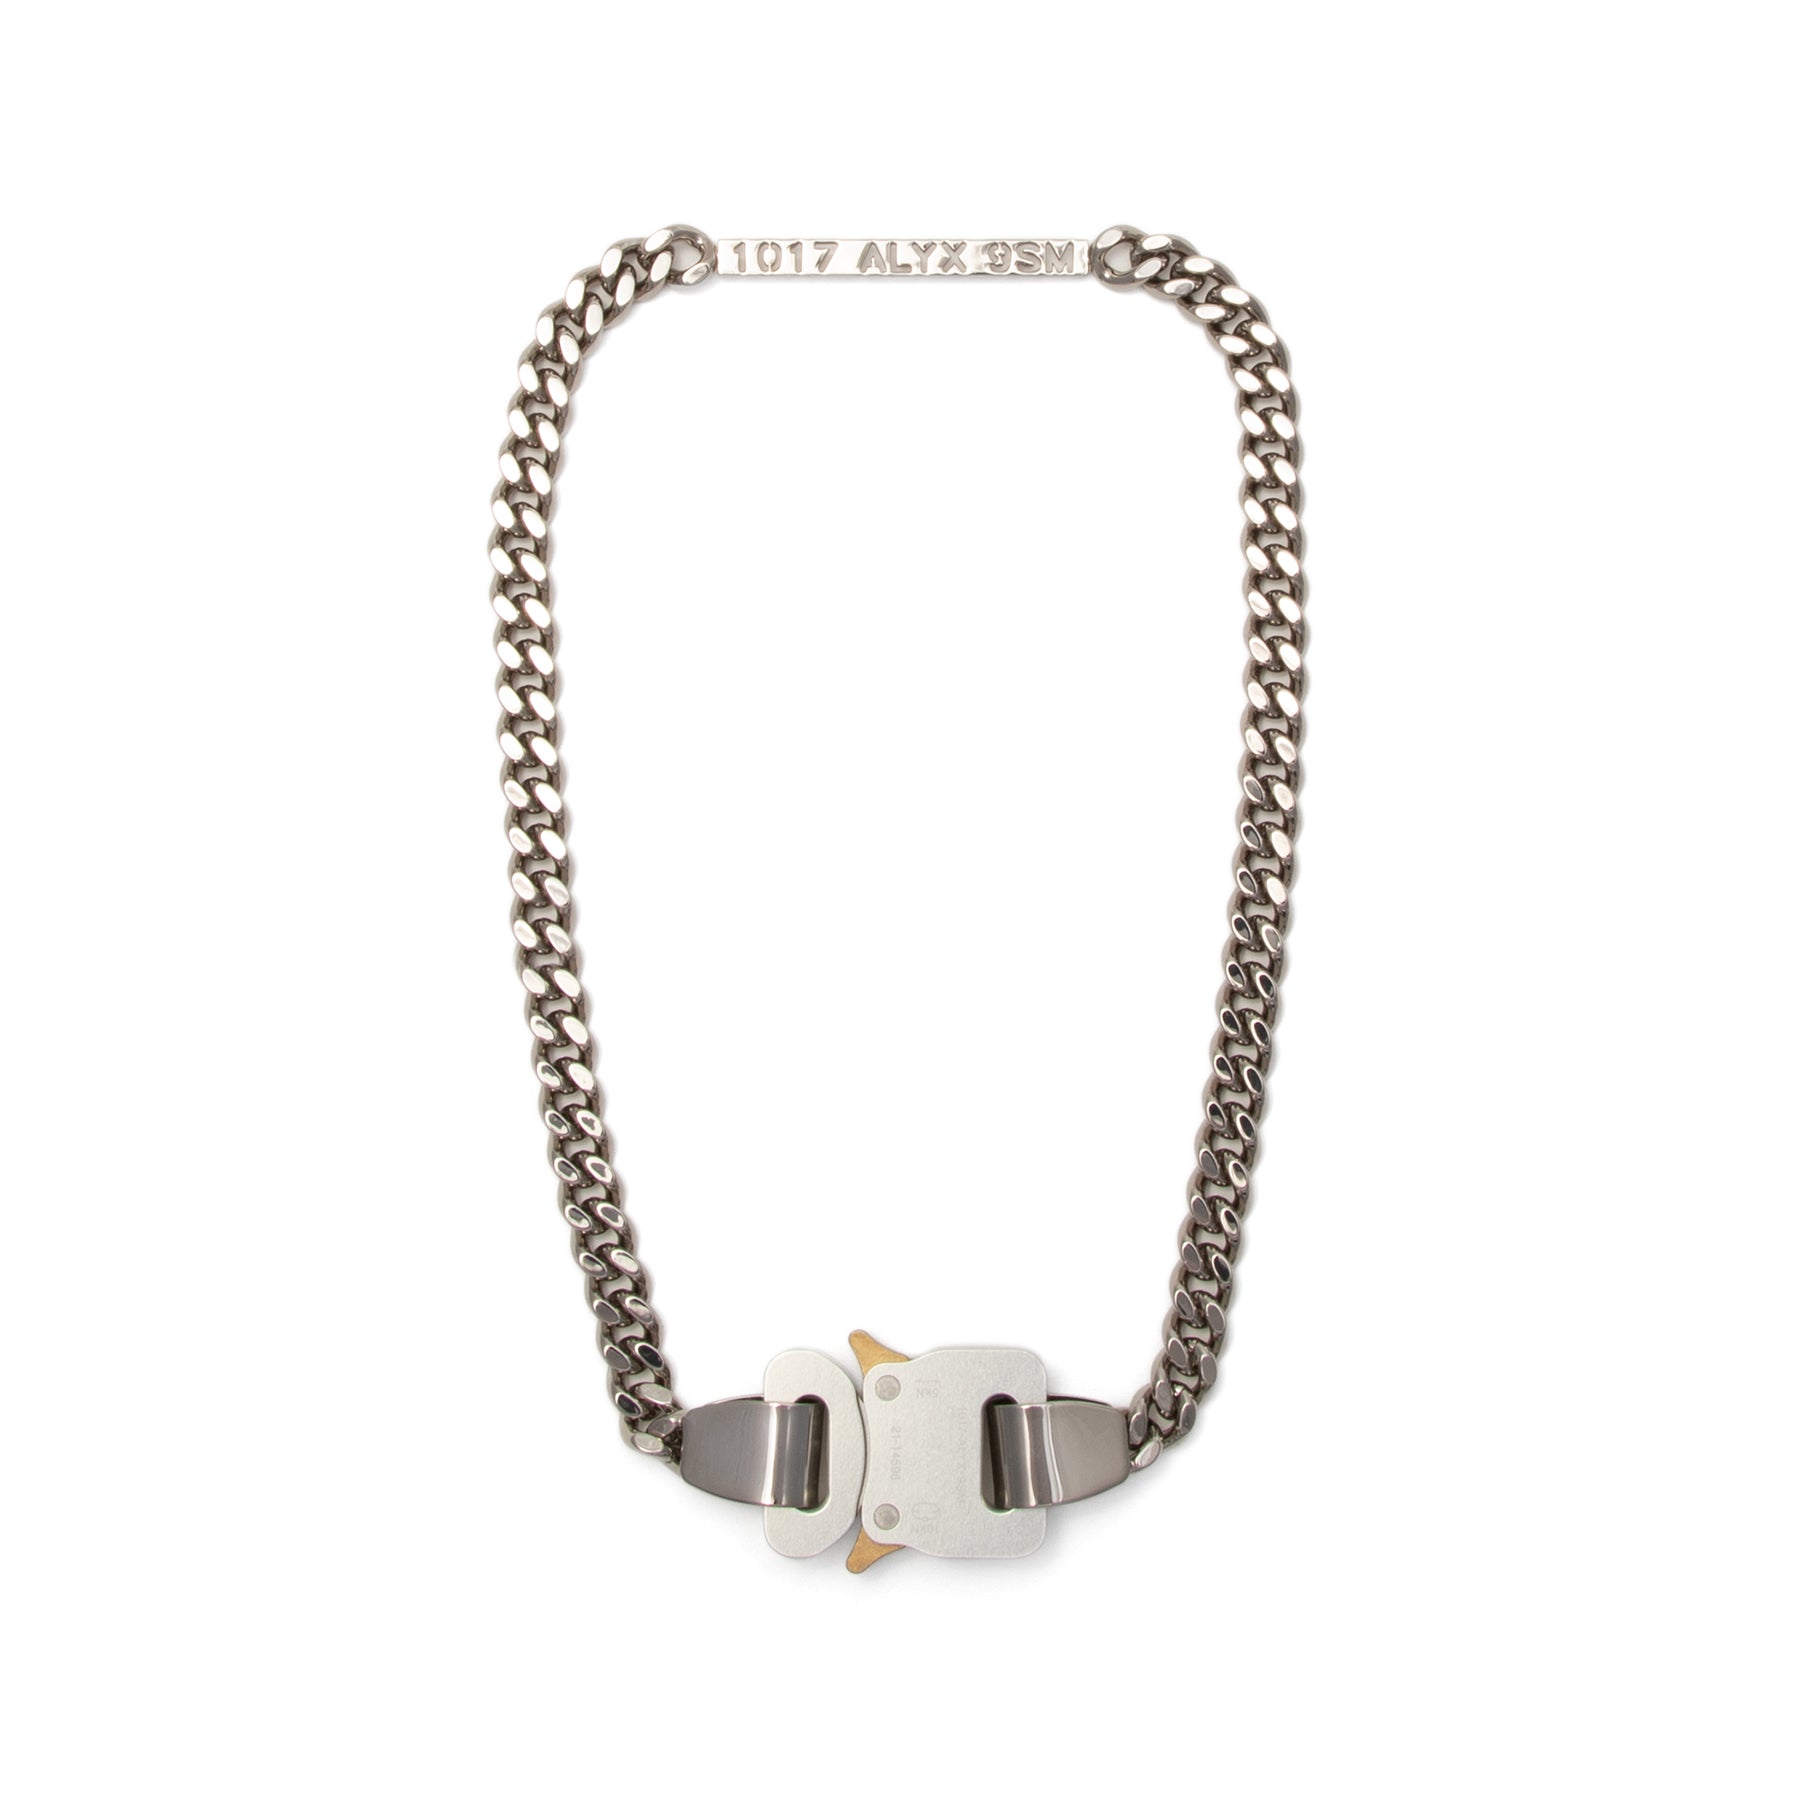 ALYX 9SM Buckle Necklace Silver Grey – Concepts